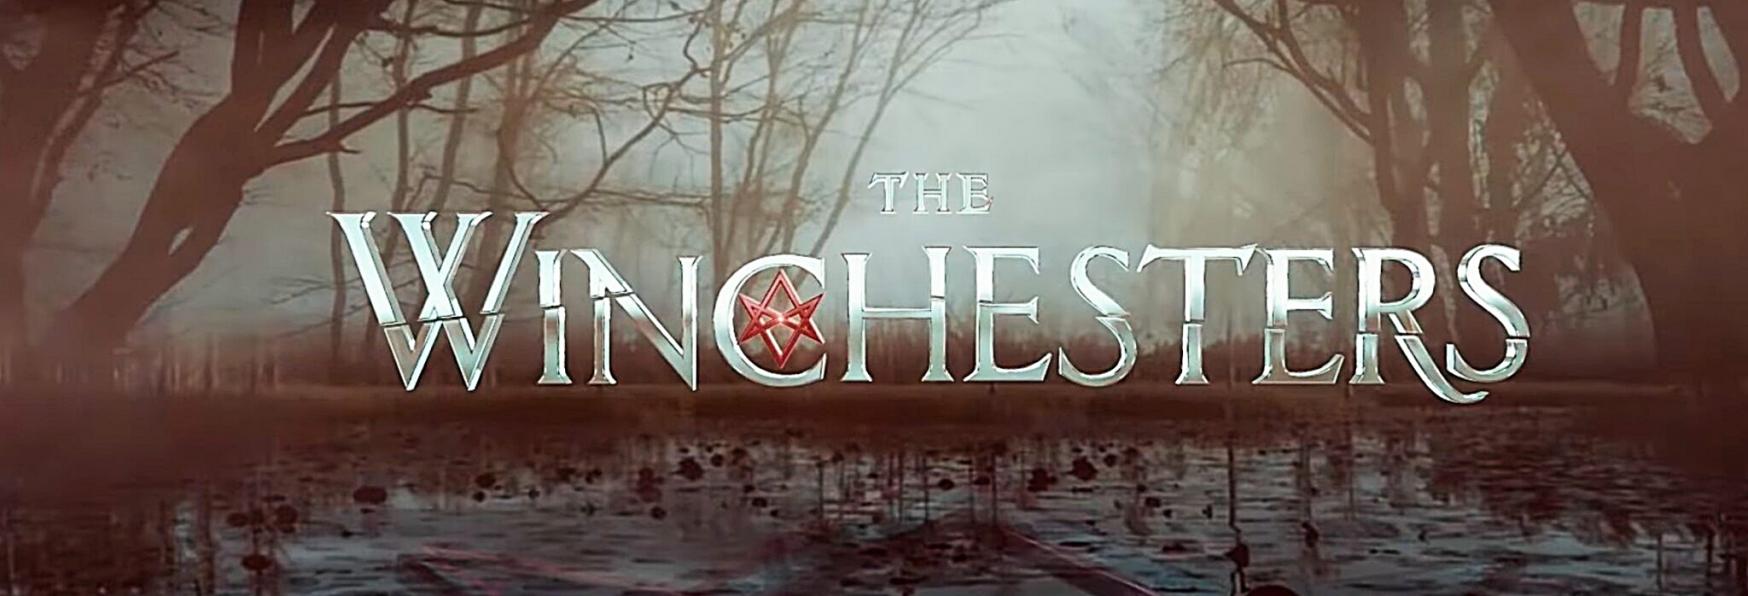 The Winchesters 1x01: pubblicata la Sinossi della Premiere della nuova Serie TV